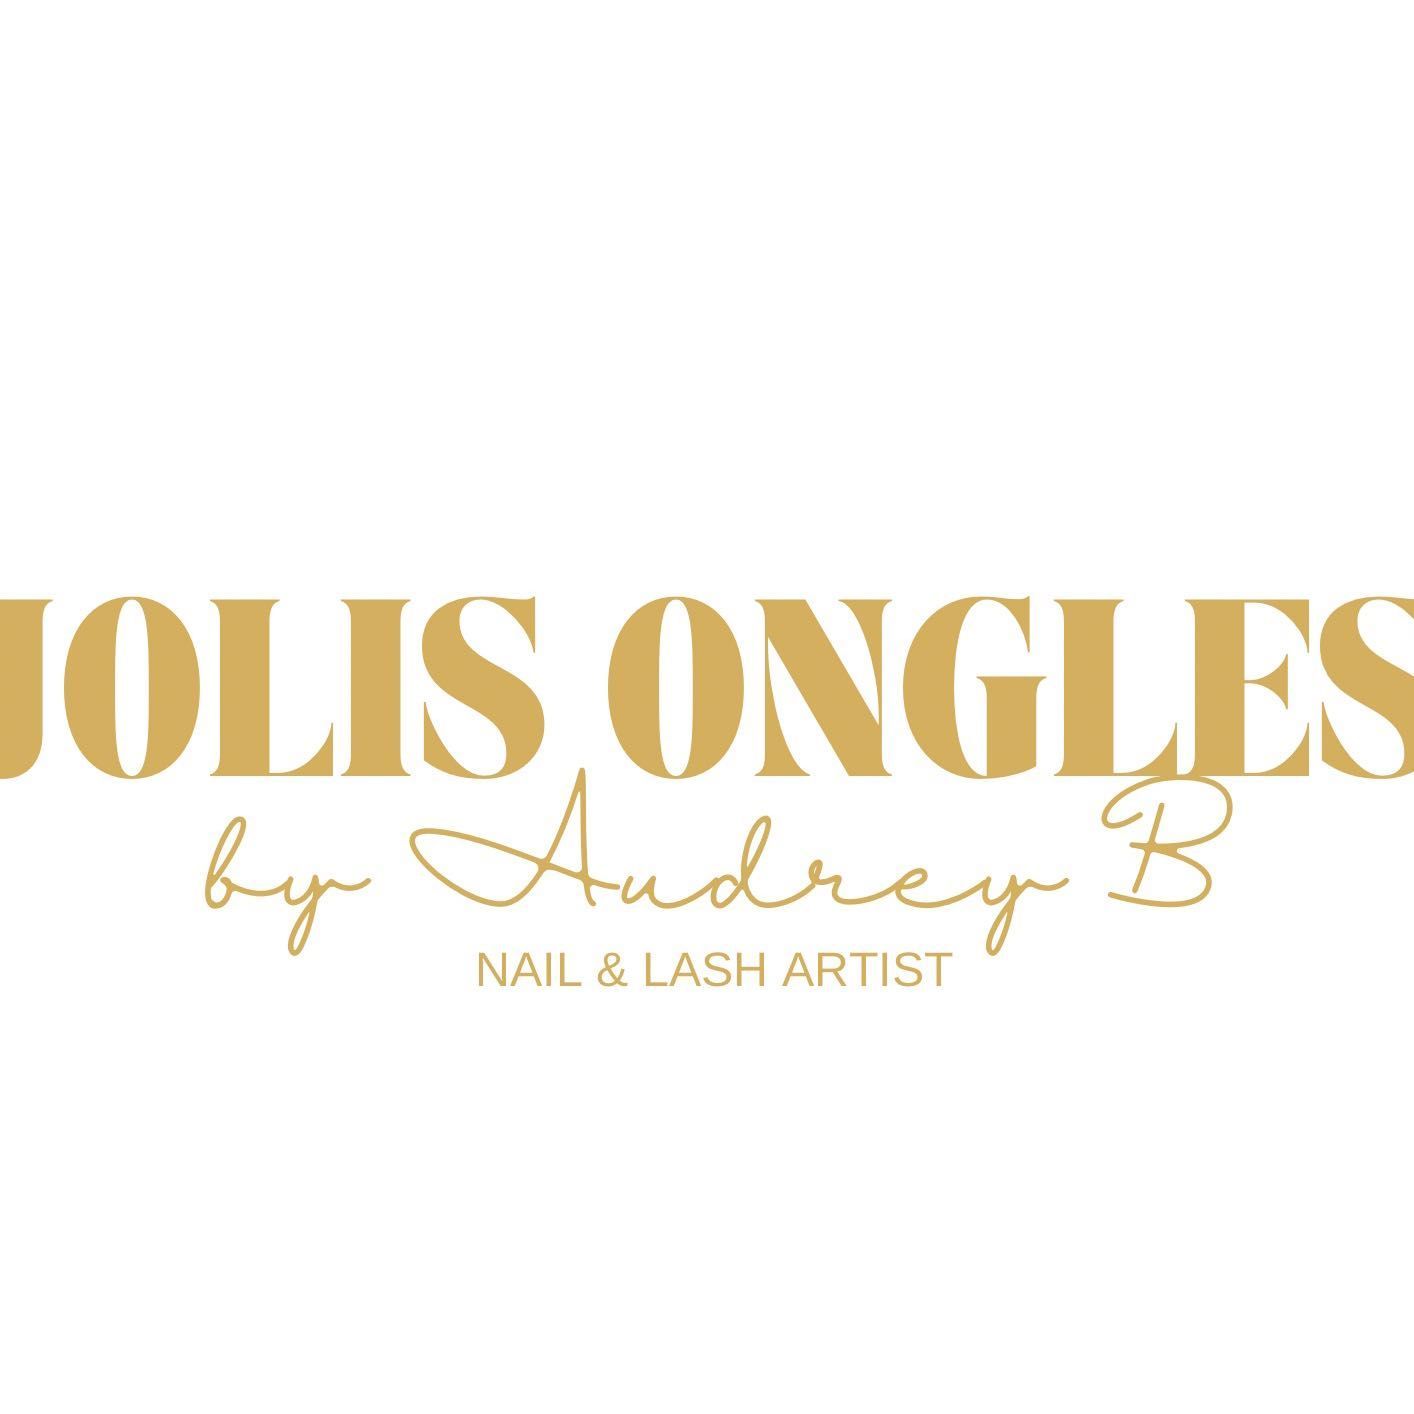 Jolis Ongles by Audrey B, Le cabinet du ramier, 9 rue de la laque, 31150, Fenouillet